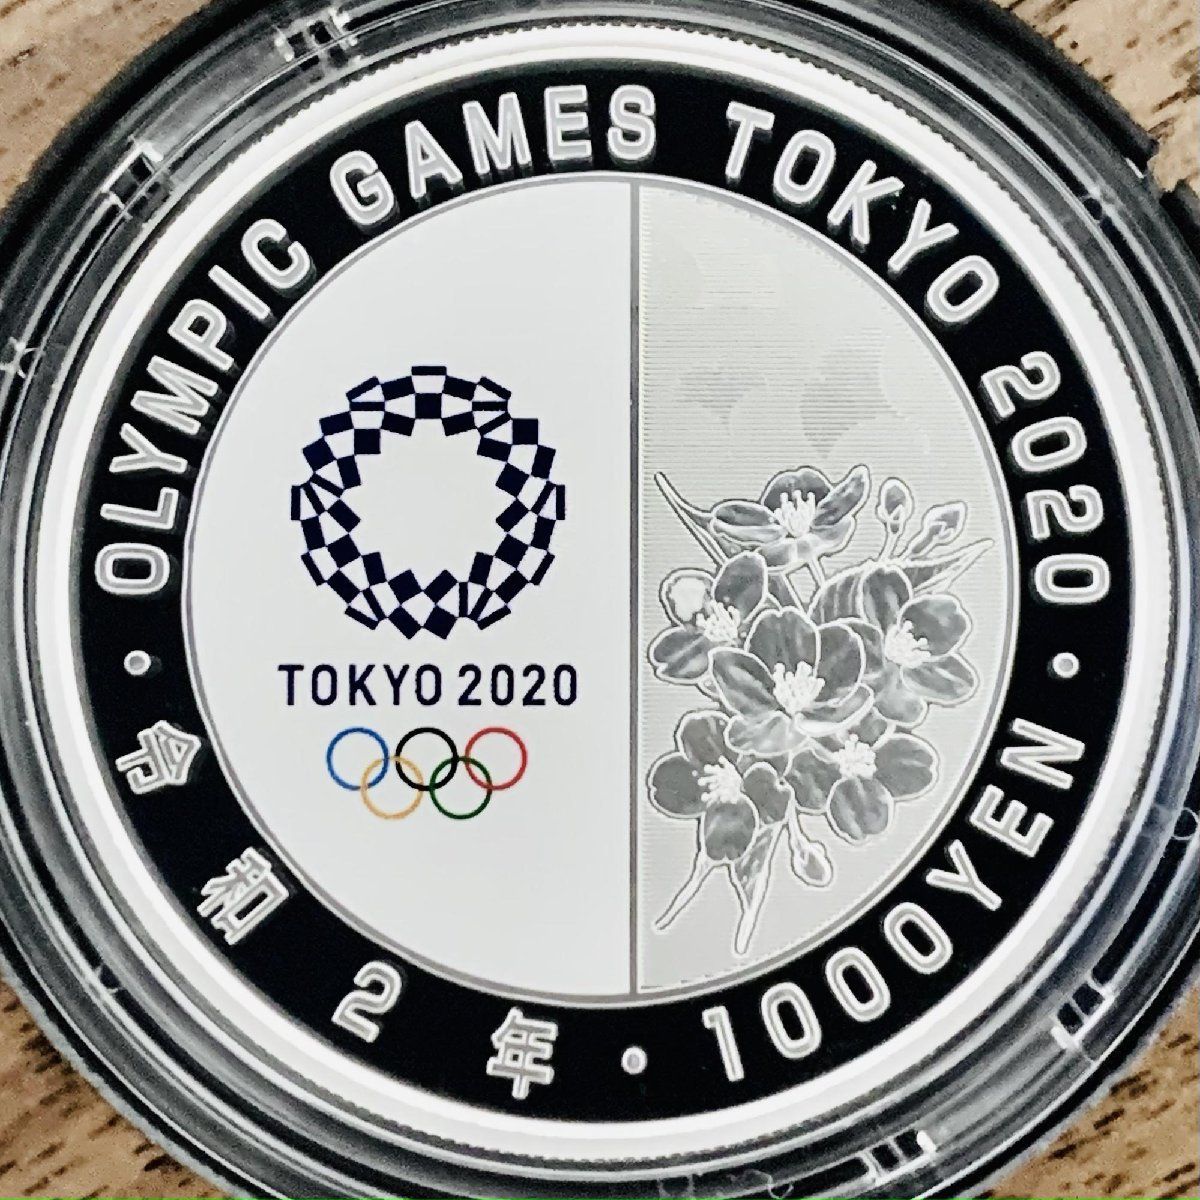 東京五輪 千円銀貨 卓球 東京2020オリンピック競技大会記念 千円銀貨幣